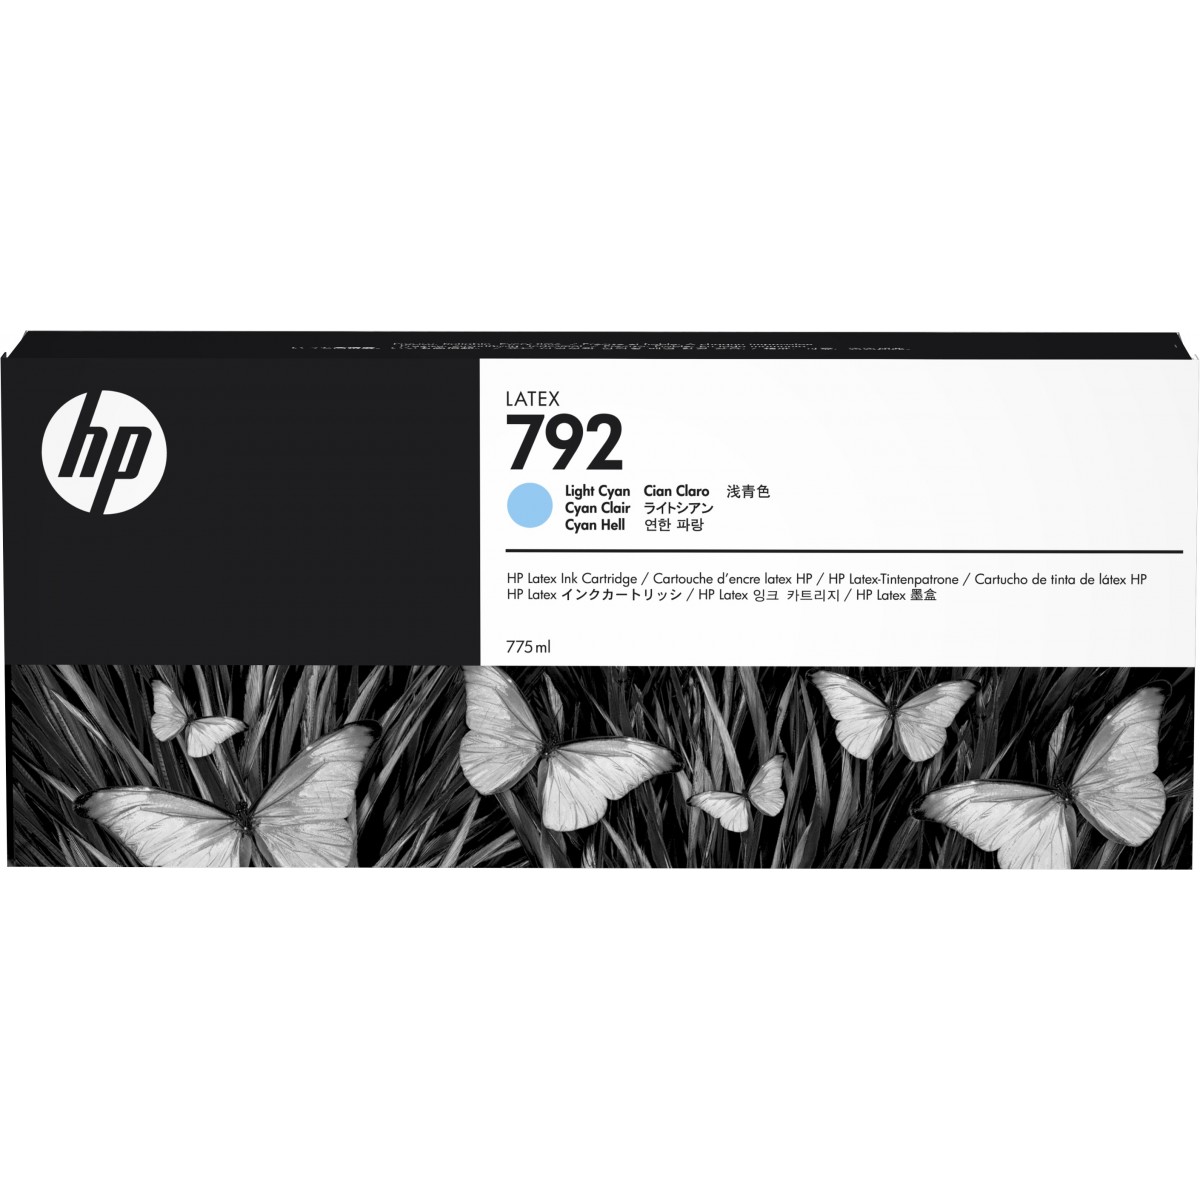 HP 792 - Original - Pigment-based ink - Cyan - HP - HP Latex 210 - 260 - 280 - 1 pc(s)